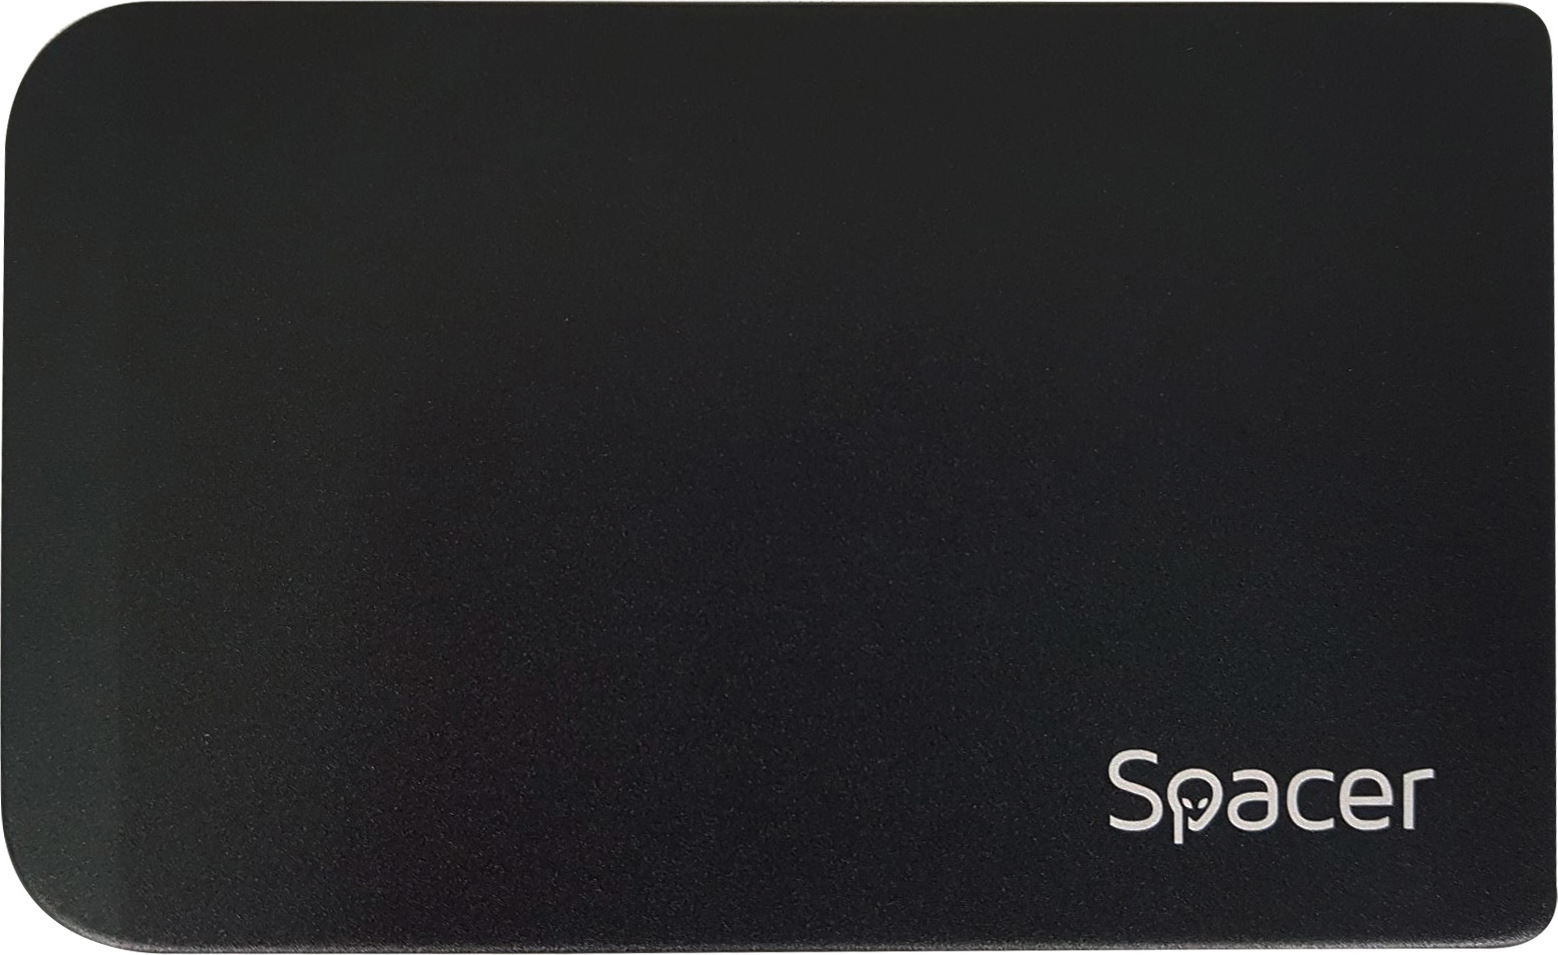 RACK extern SPACER, pt HDD/SSD, 2.5 inch, S-ATA, interfata PC USB 3.0, Husa piele sintetitca, aluminiu, negru, „SPR-25611” 45503295 (timbru verde 0.8 lei)